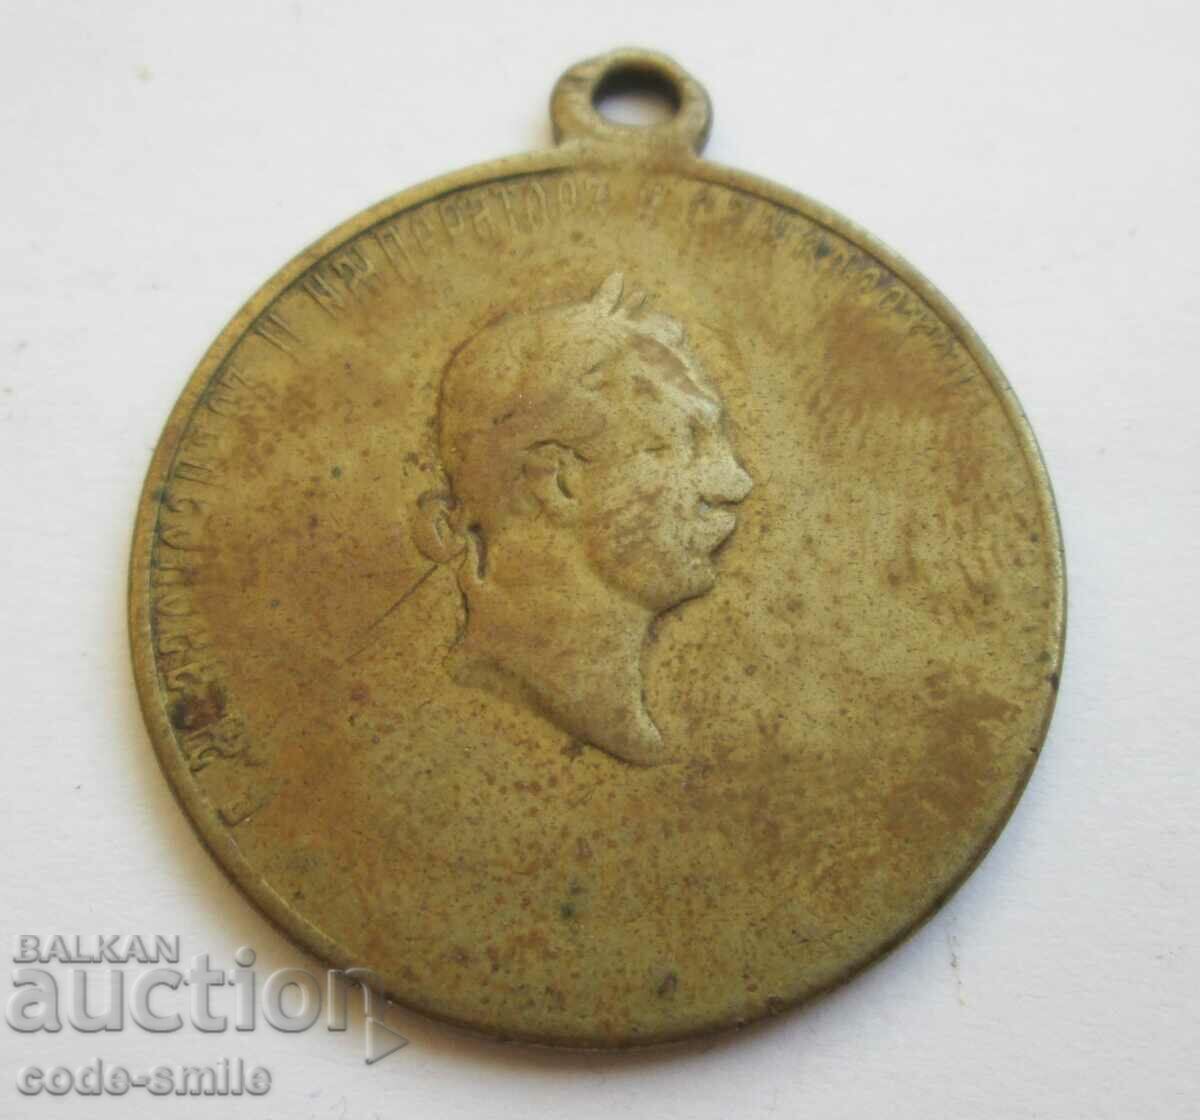 Παλαιό μετάλλιο πολιτοφυλακής από τον Ρωσοτουρκικό πόλεμο της ανεξαρτησίας